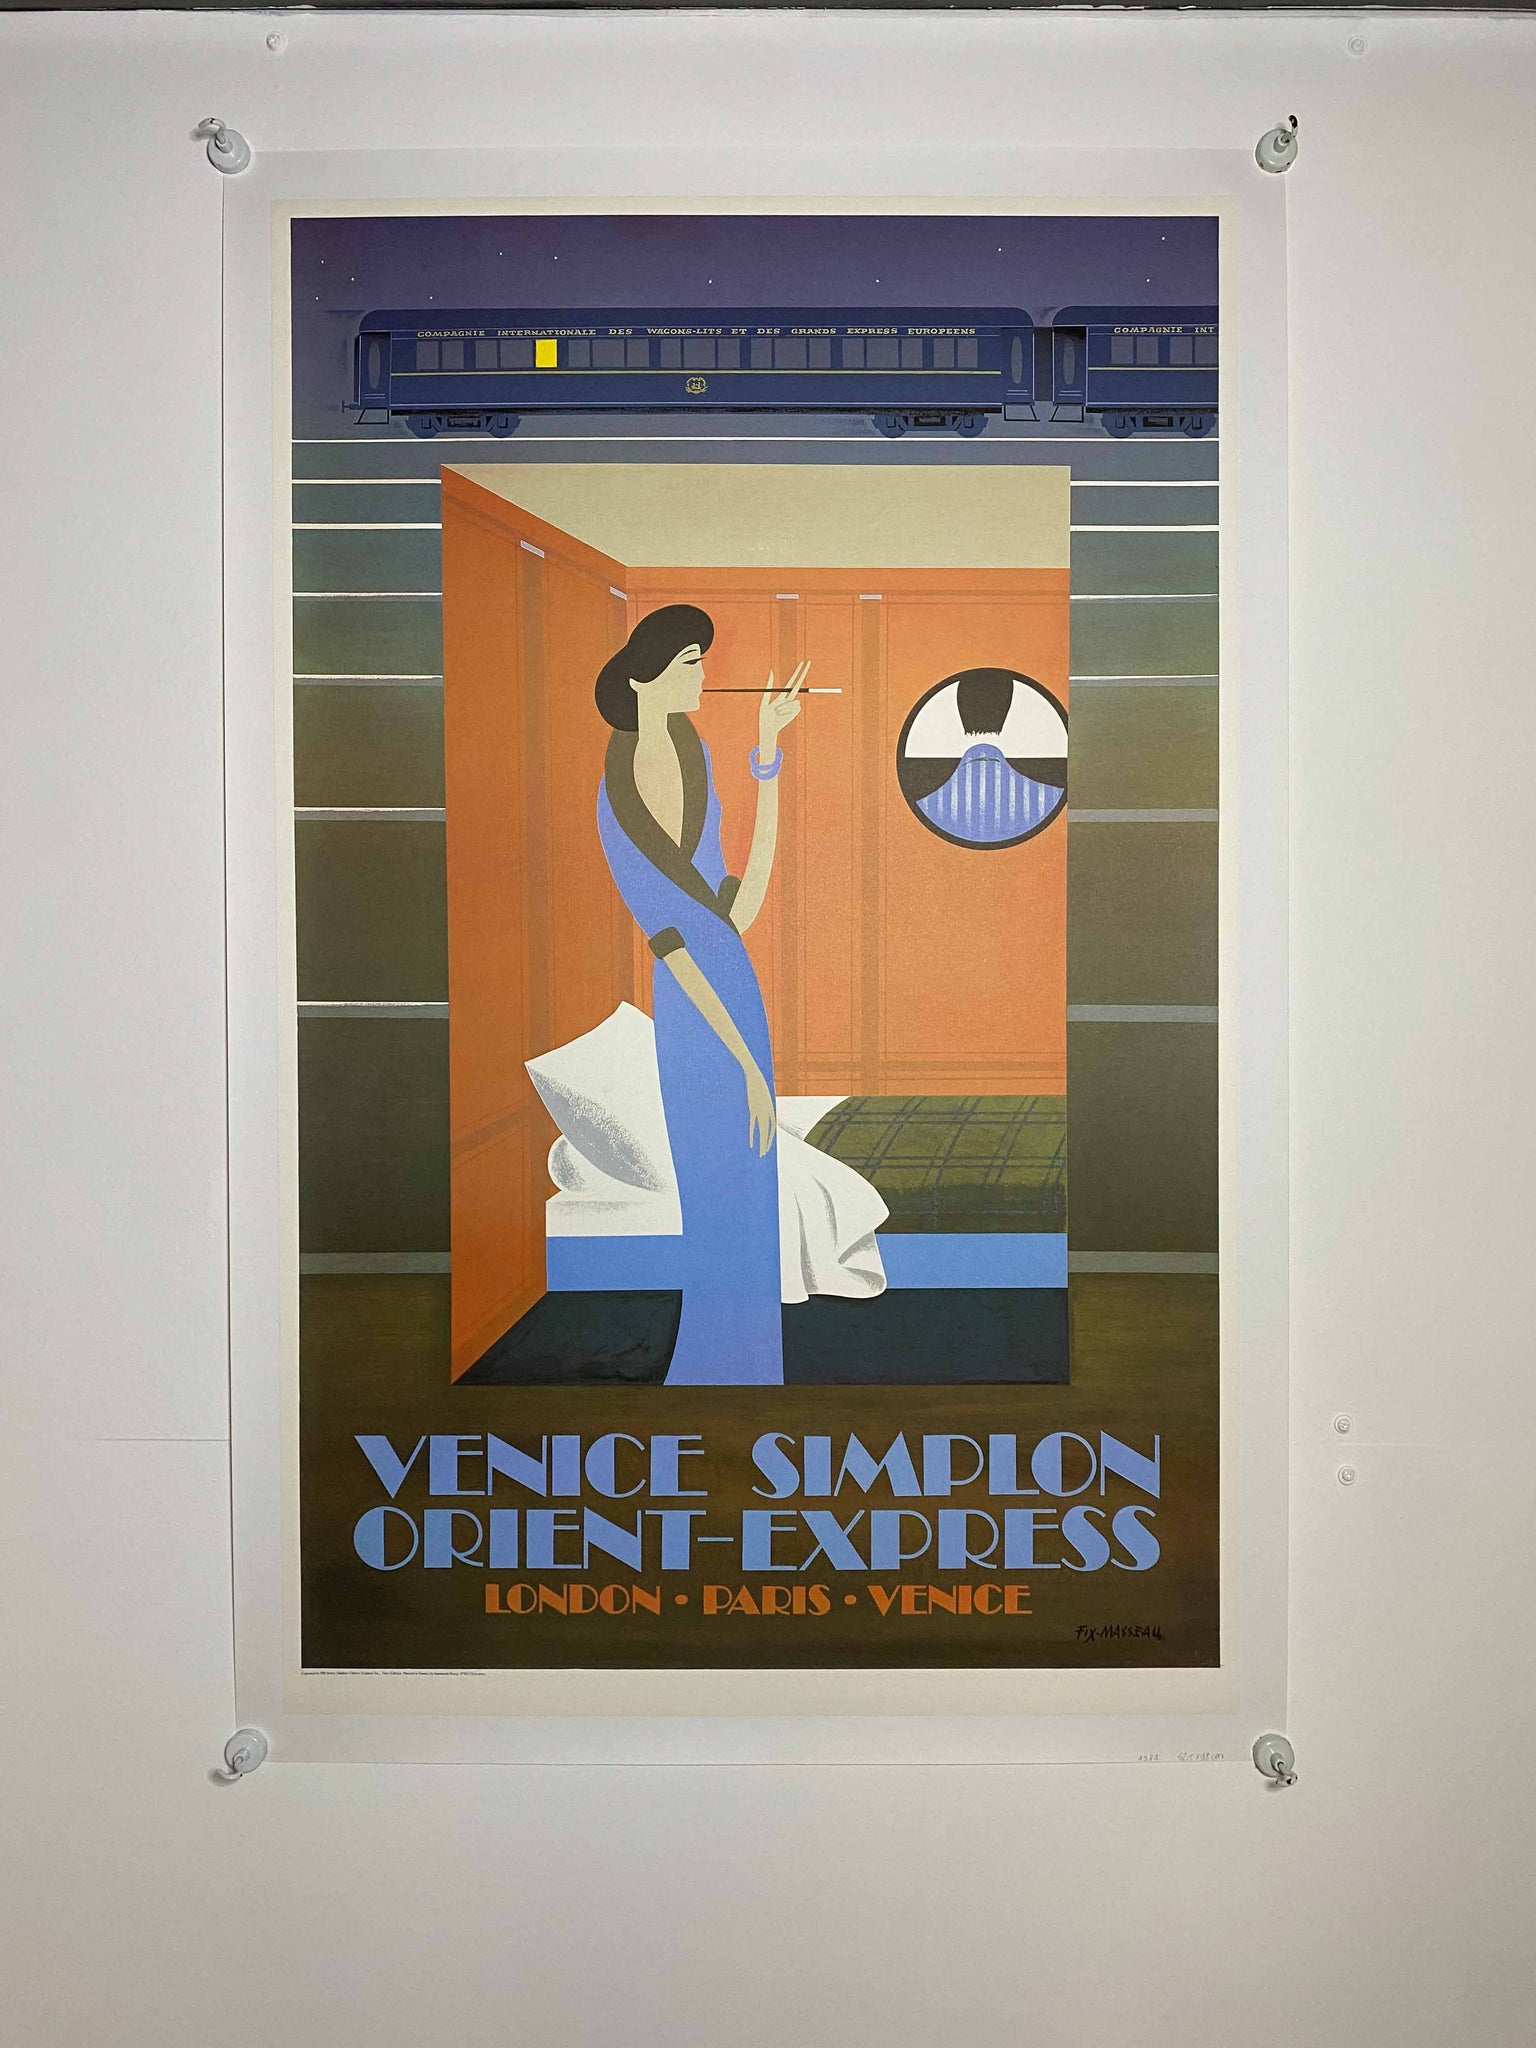 Affiche vintage Wagon Lit - Venice Simplon Orient-Express Par Fix-Masseau, 1981